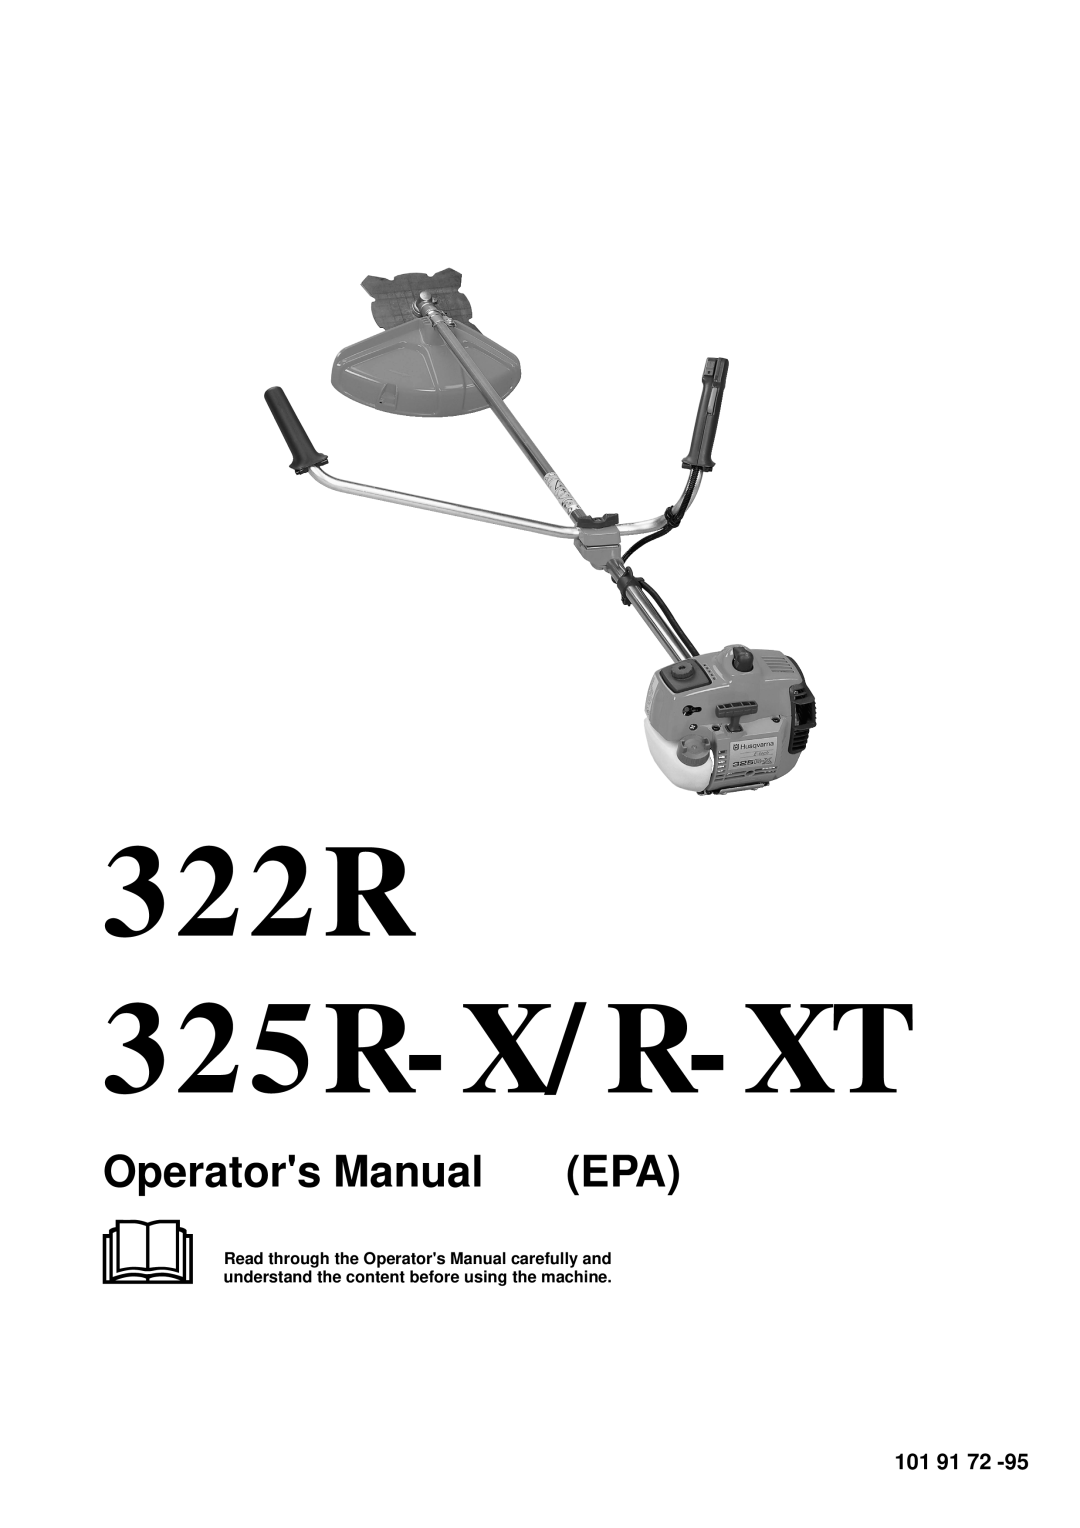 Husqvarna manual 322R 325R-X/R-XT, Operators Manual 